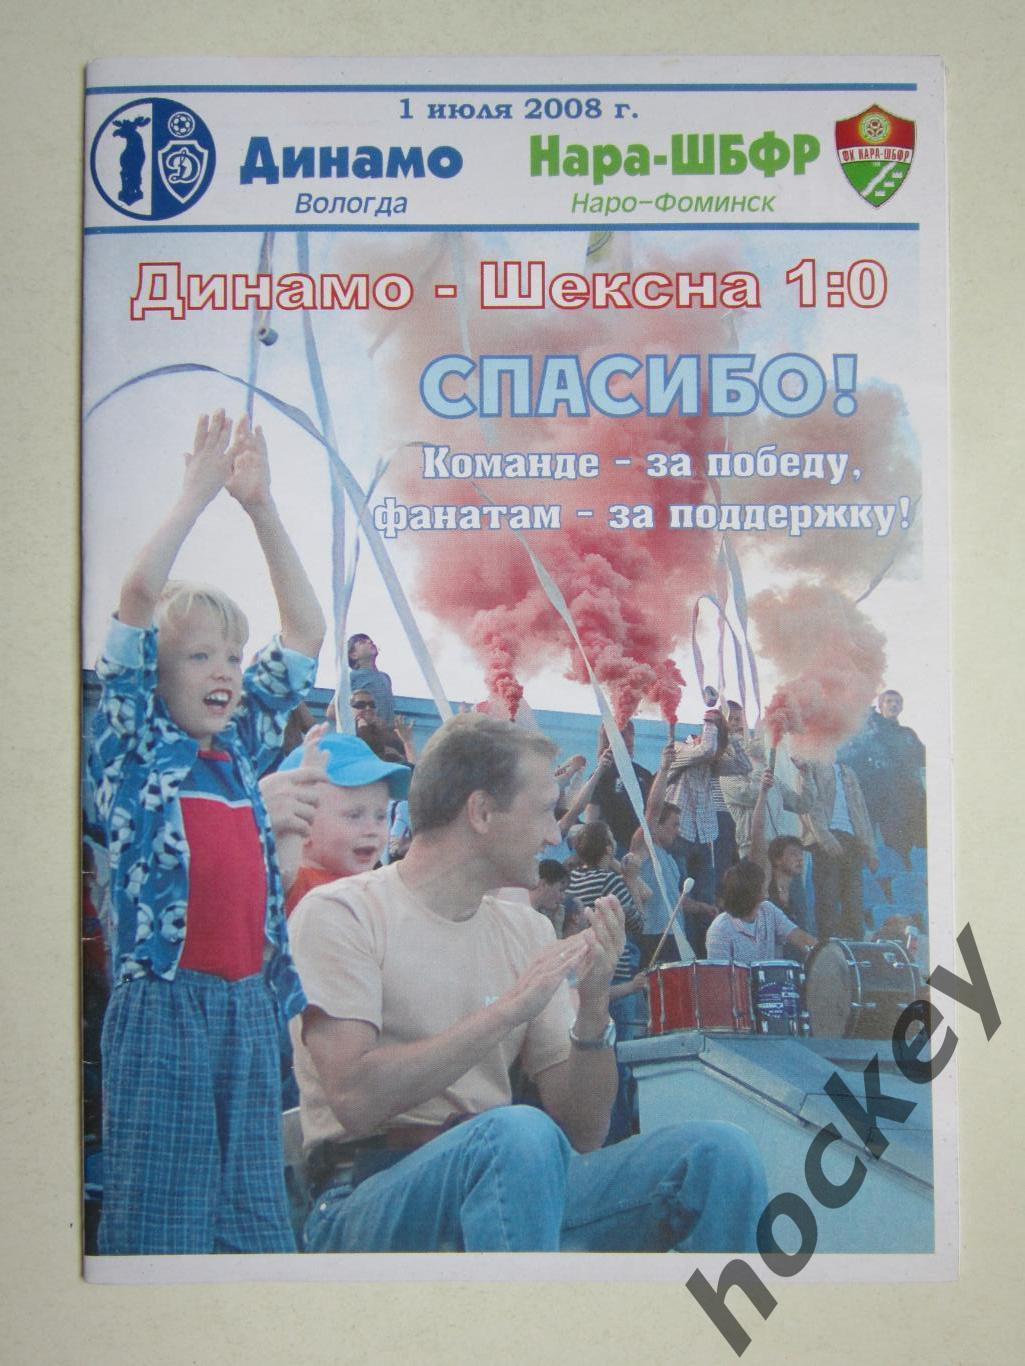 Динамо Вологда - Нара-ШБФР Наро-Фоминск 1.07.2008 (20 стр.)